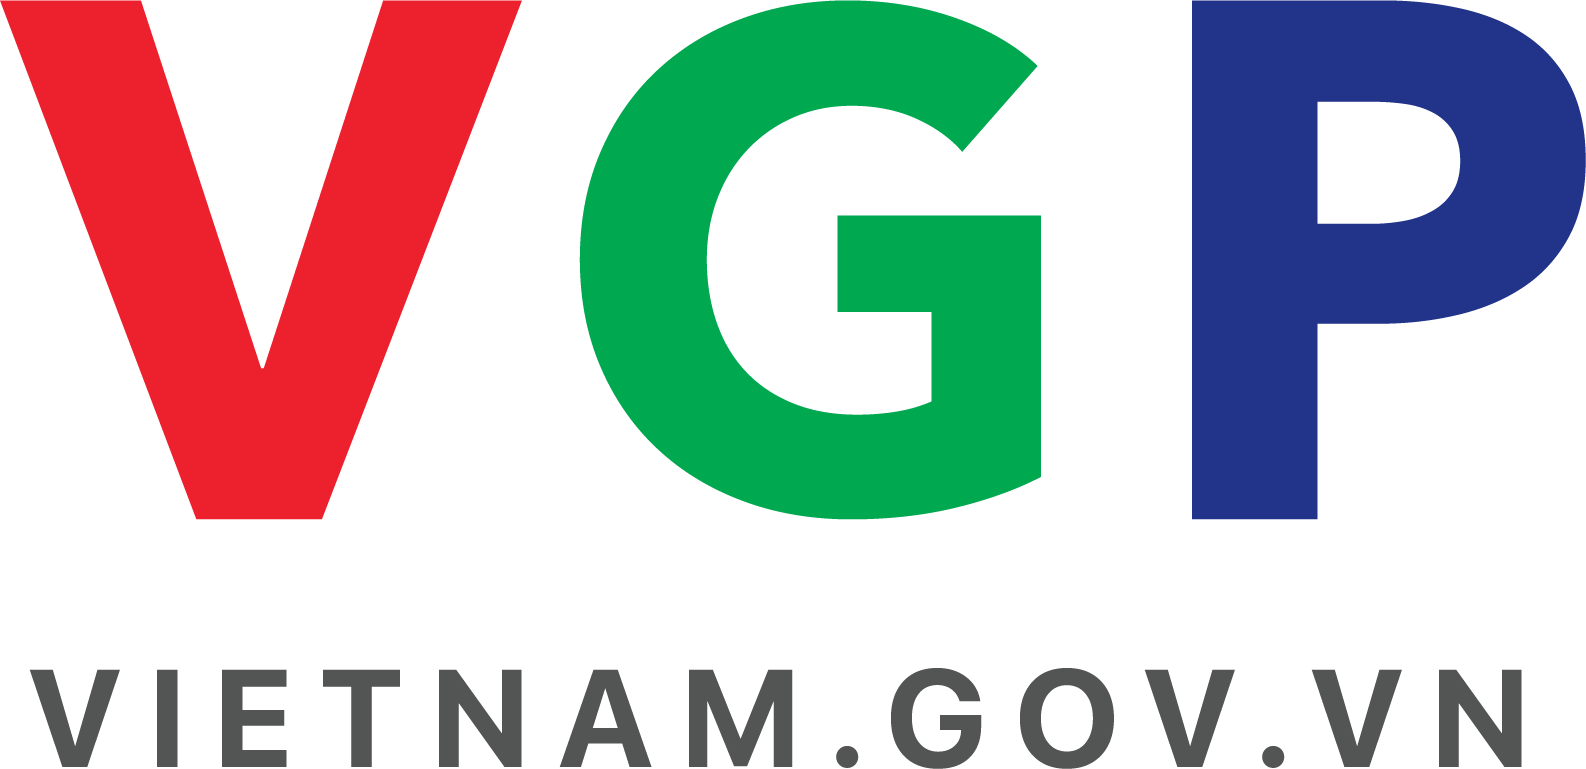 VGP Vietnam government website logo.